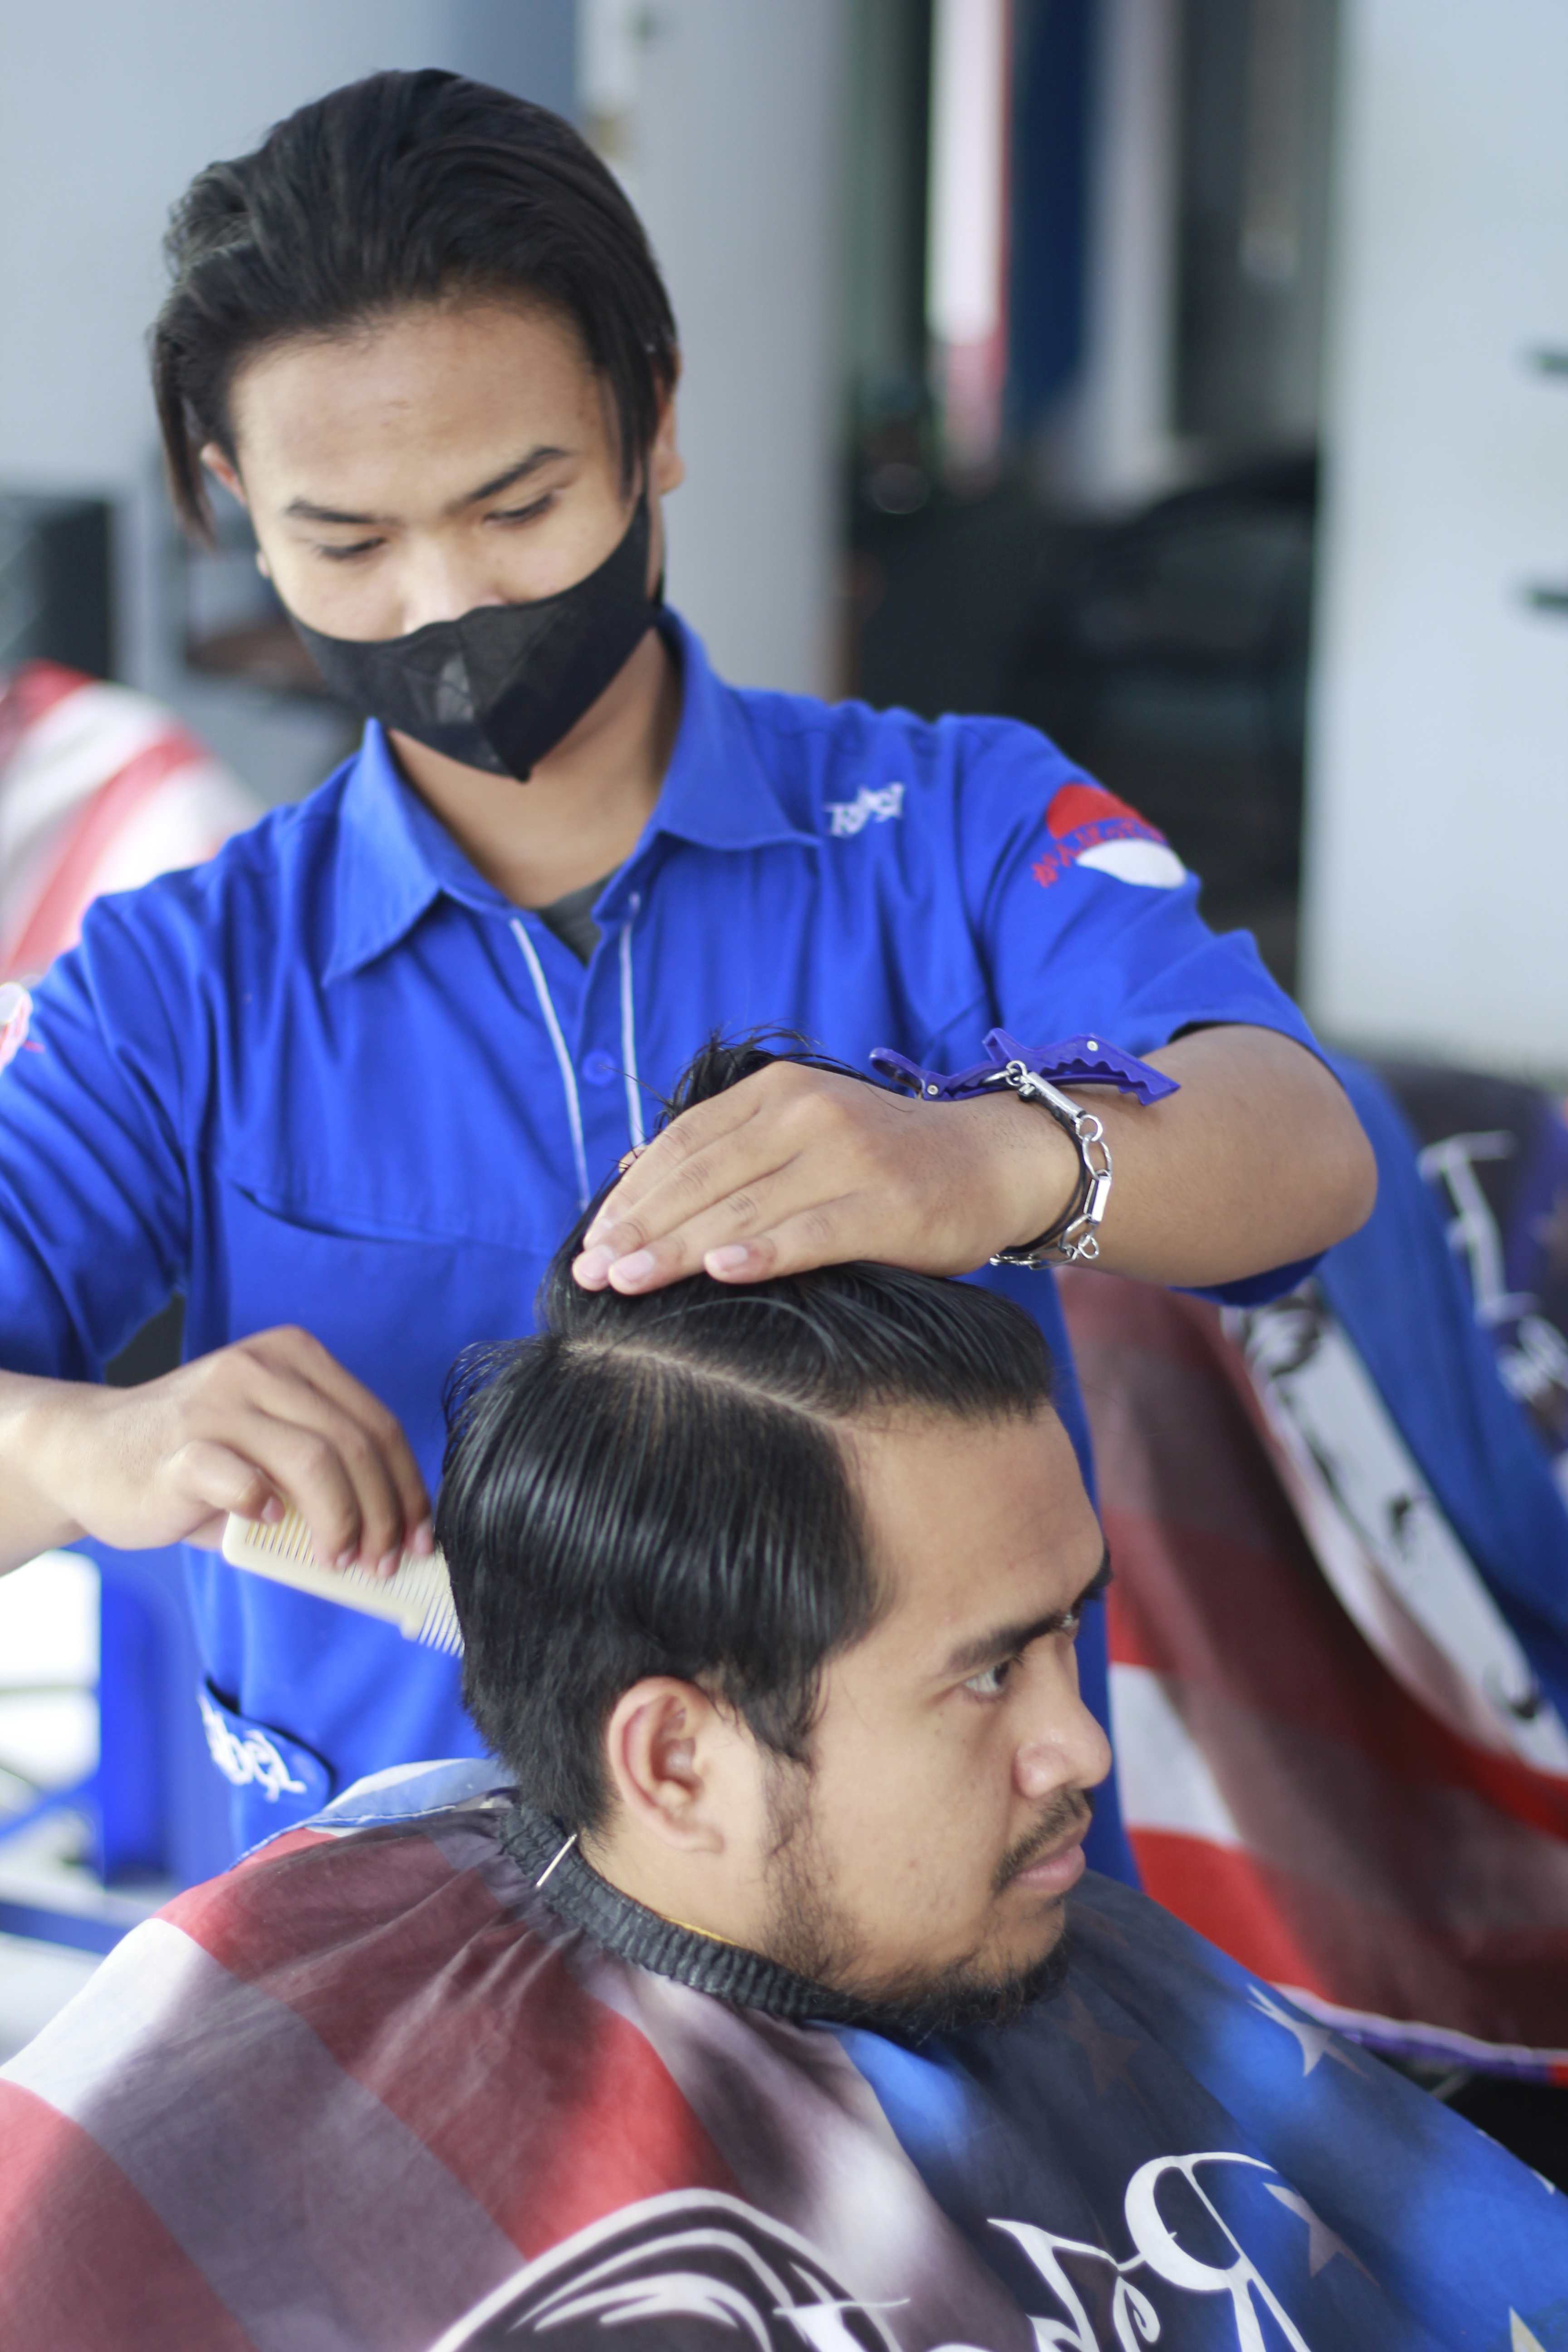 Harga Barbershop Di Kelurahan Bandulan Murah